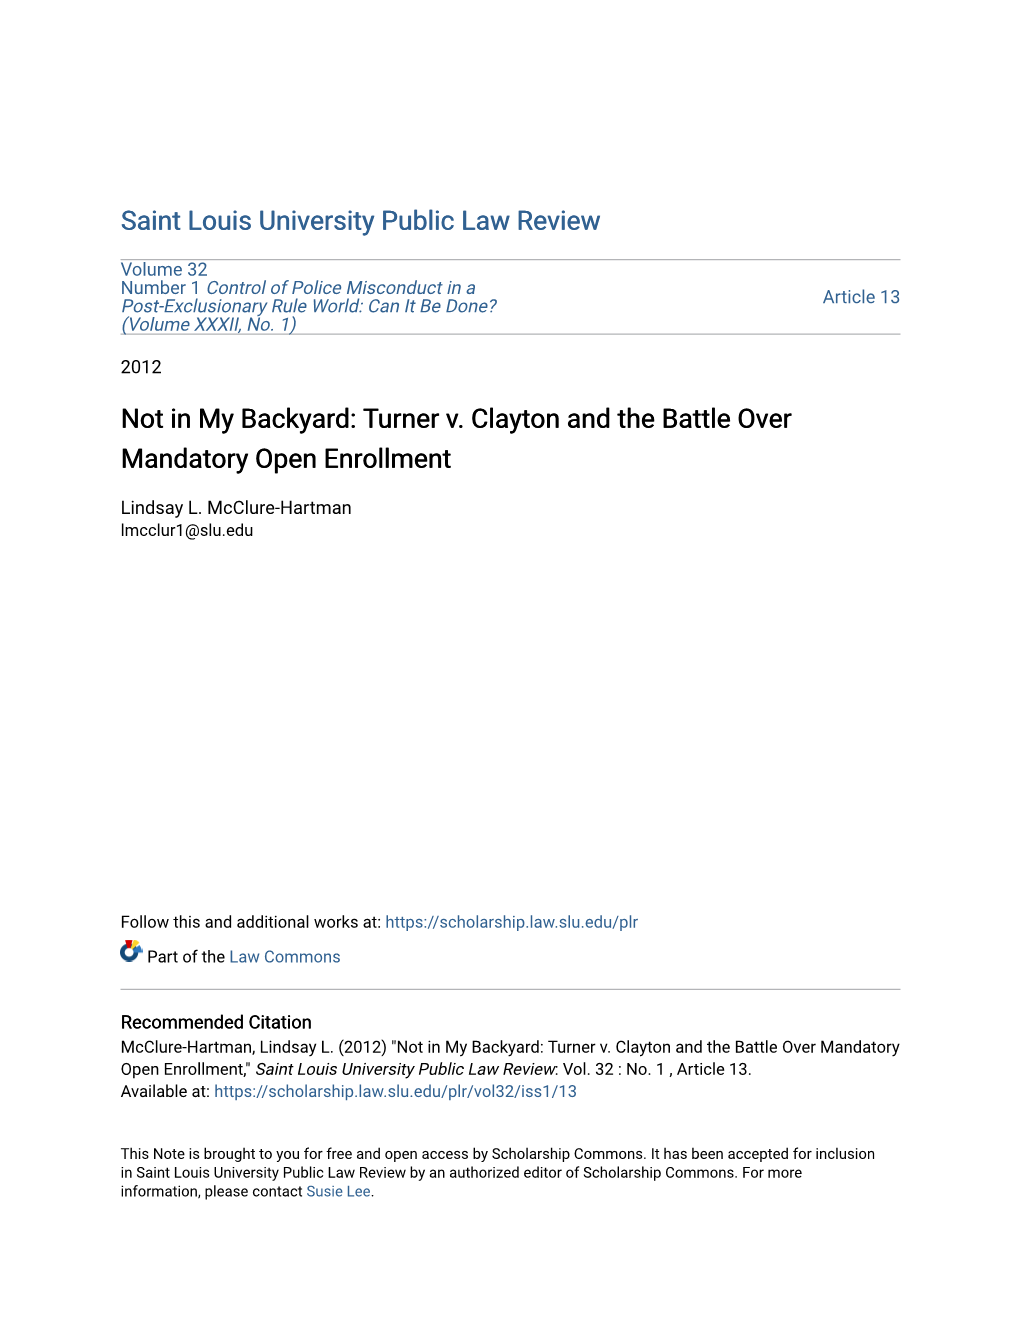 Turner V. Clayton and the Battle Over Mandatory Open Enrollment